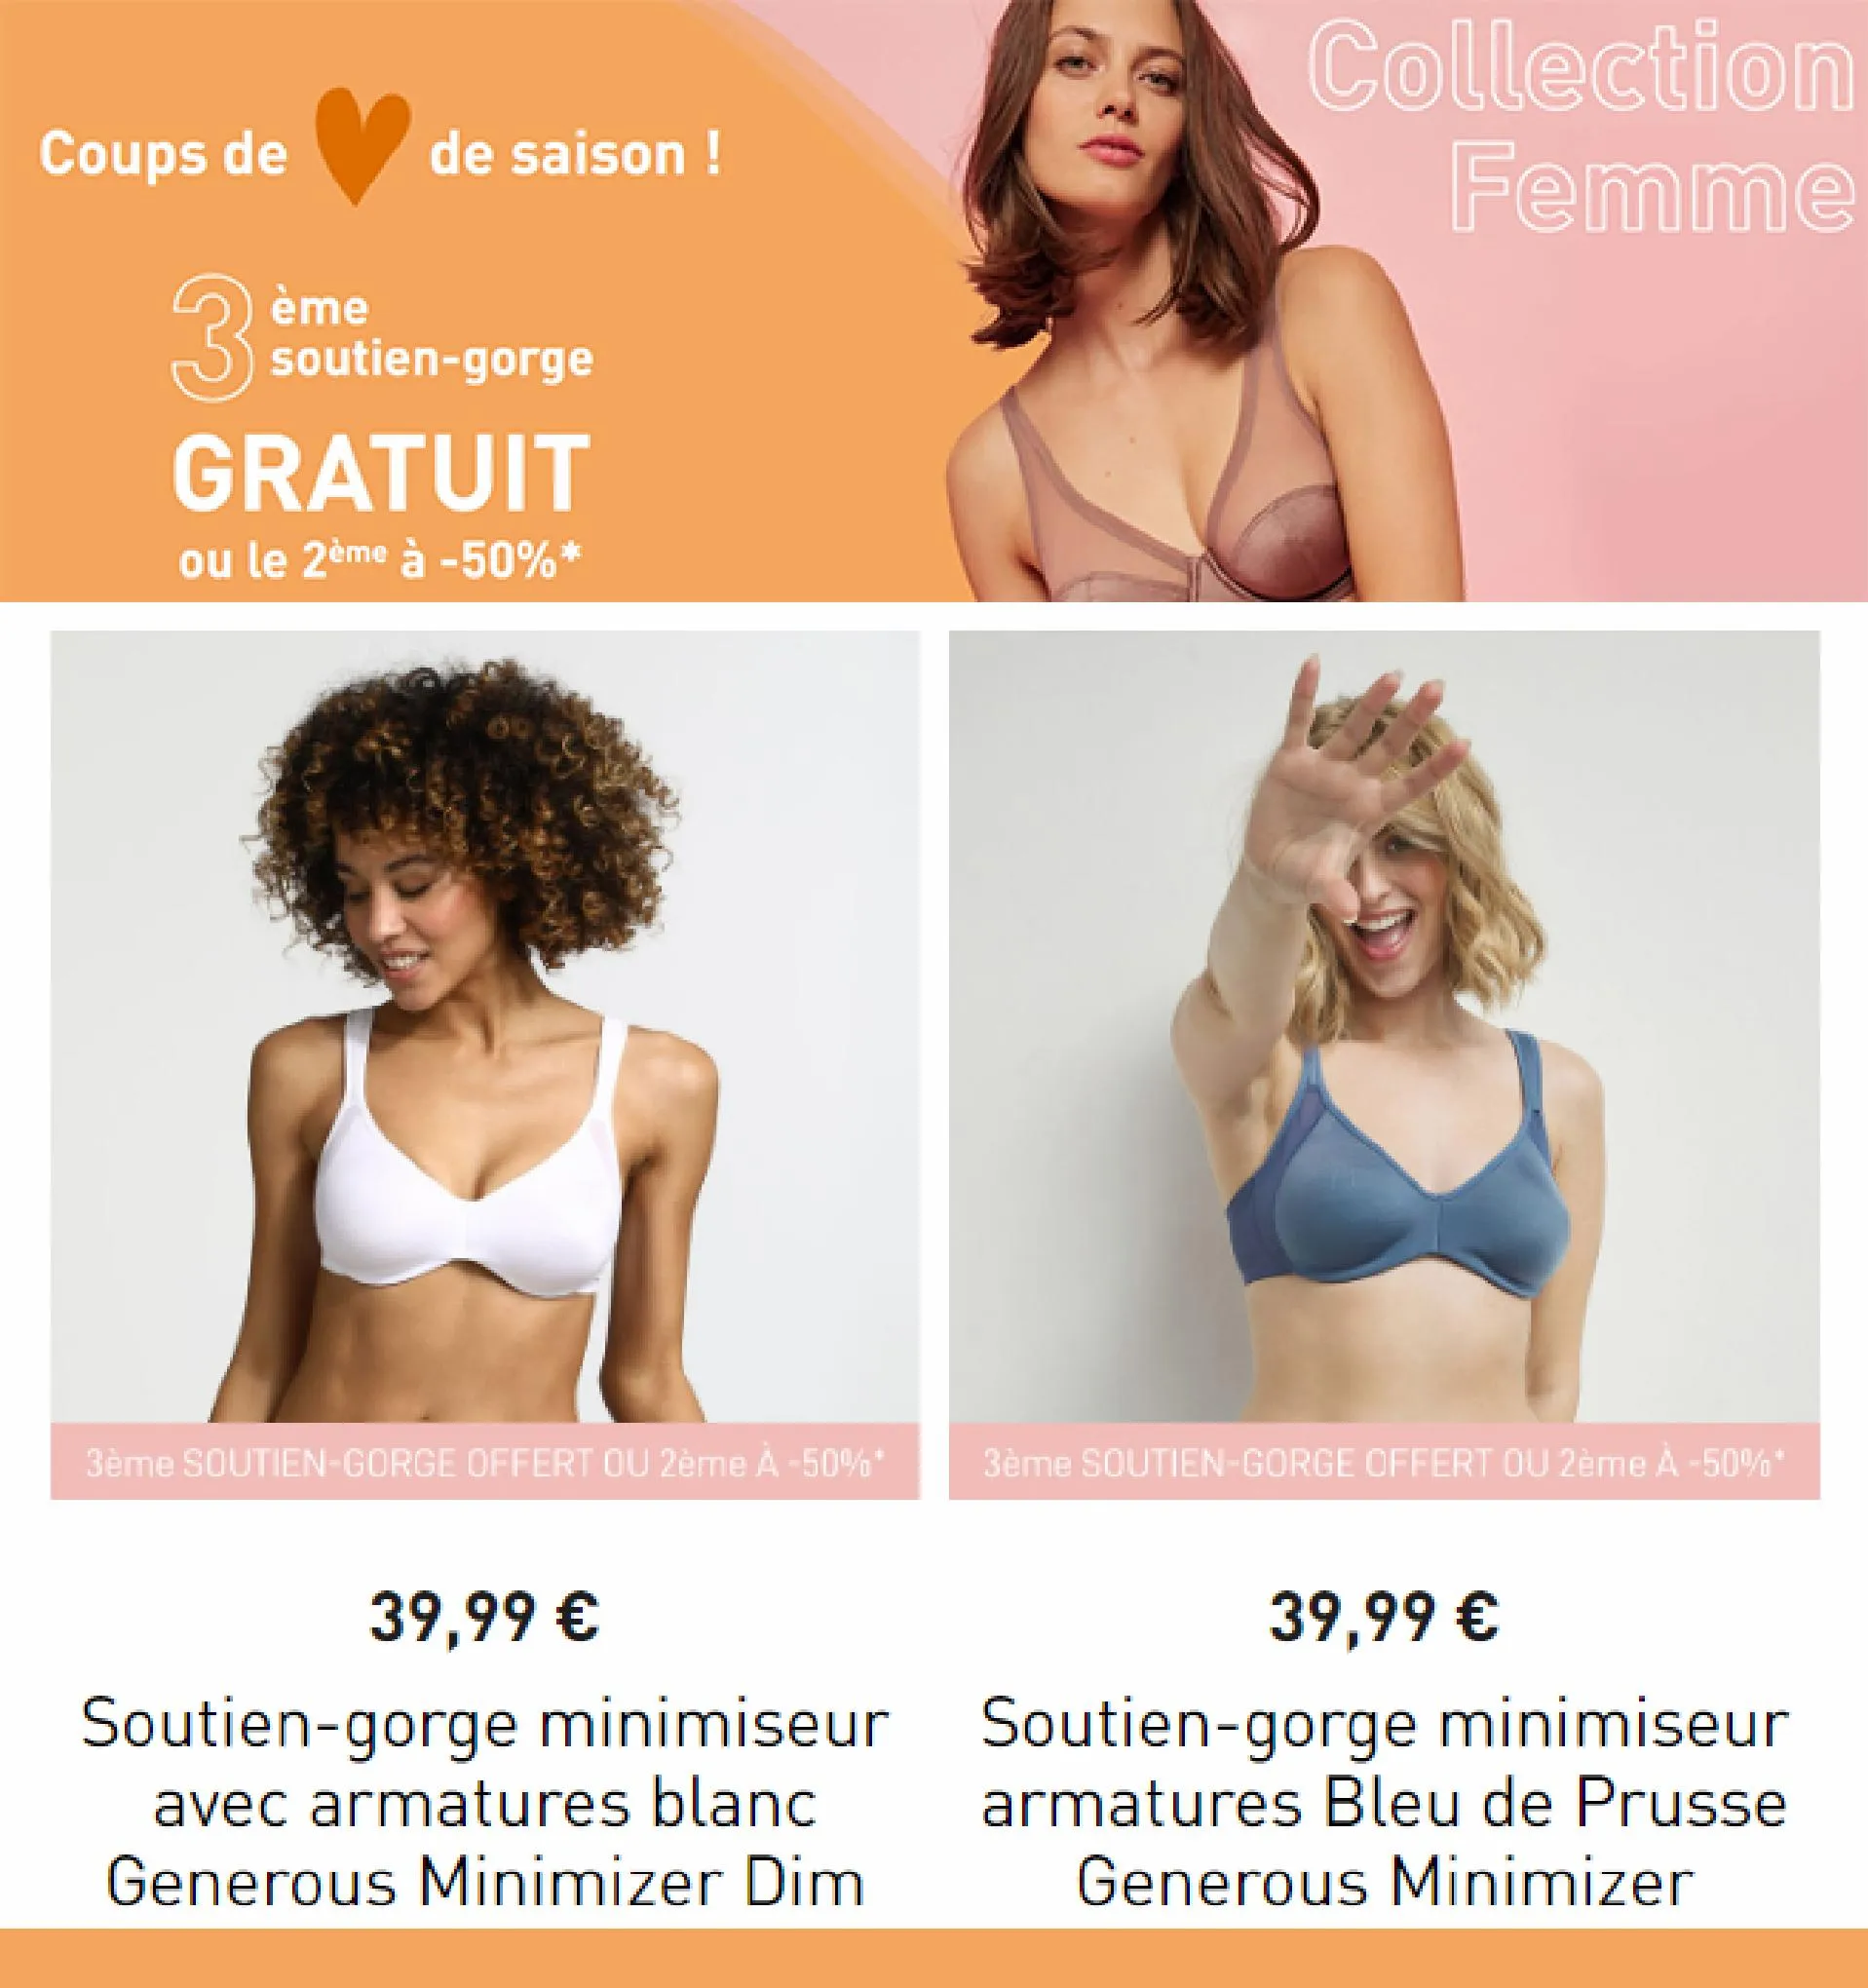 Catalogue Nouveauté, page 00004